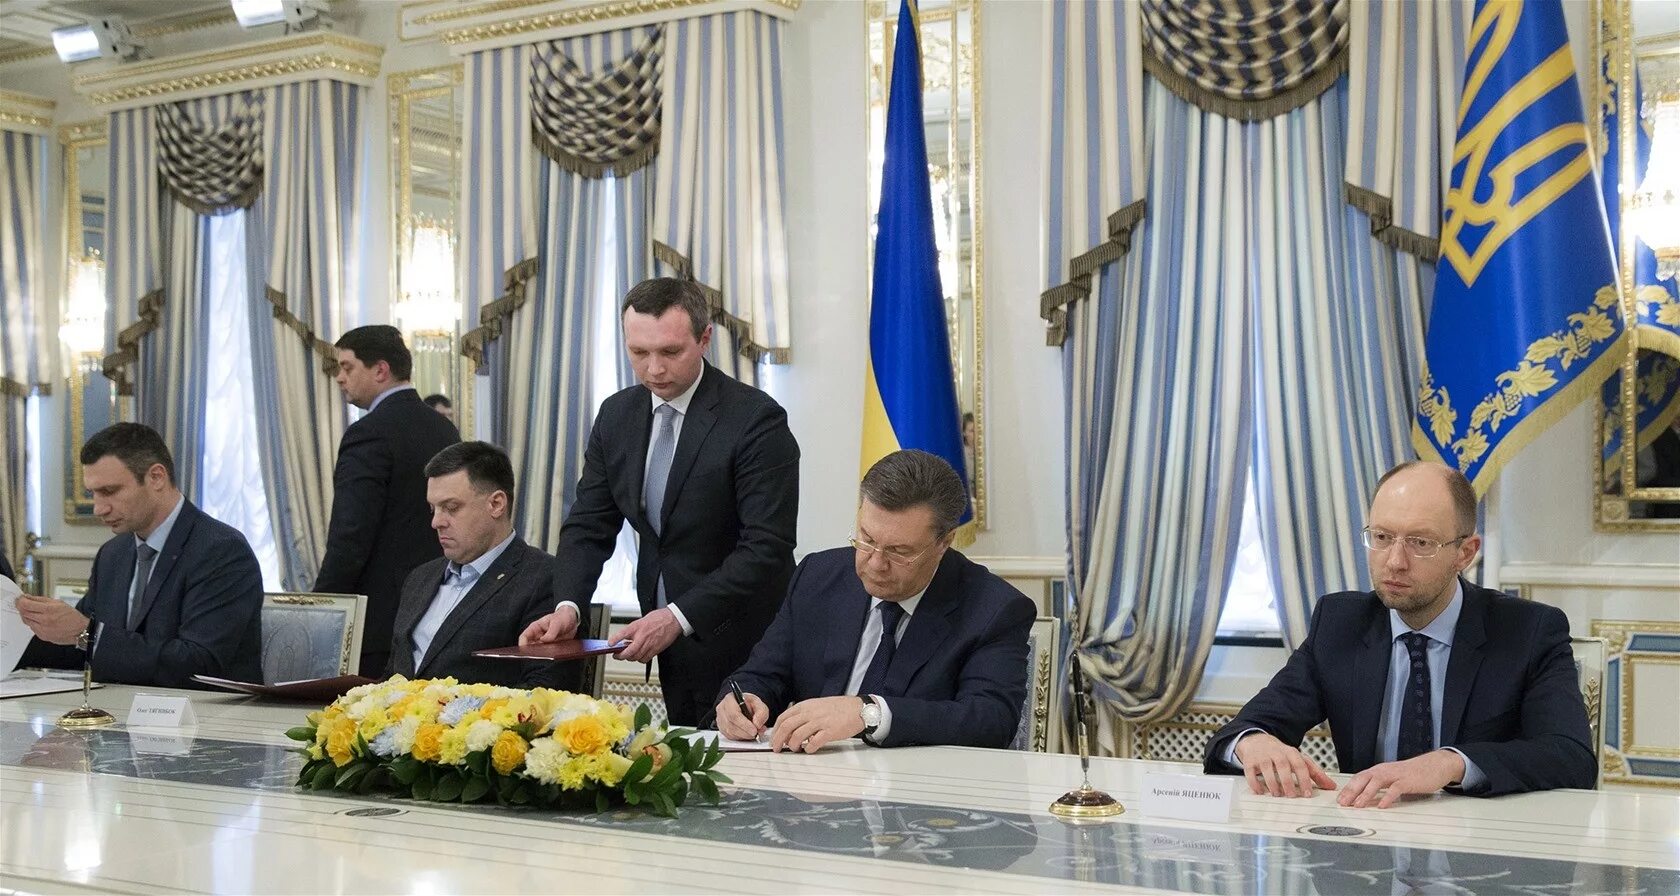 Майдан кто был президентом. Кличко Тягнибок Яценюк. Янукович Штайнмайер Яценюк. Янукович подписывает соглашение с оппозицией.